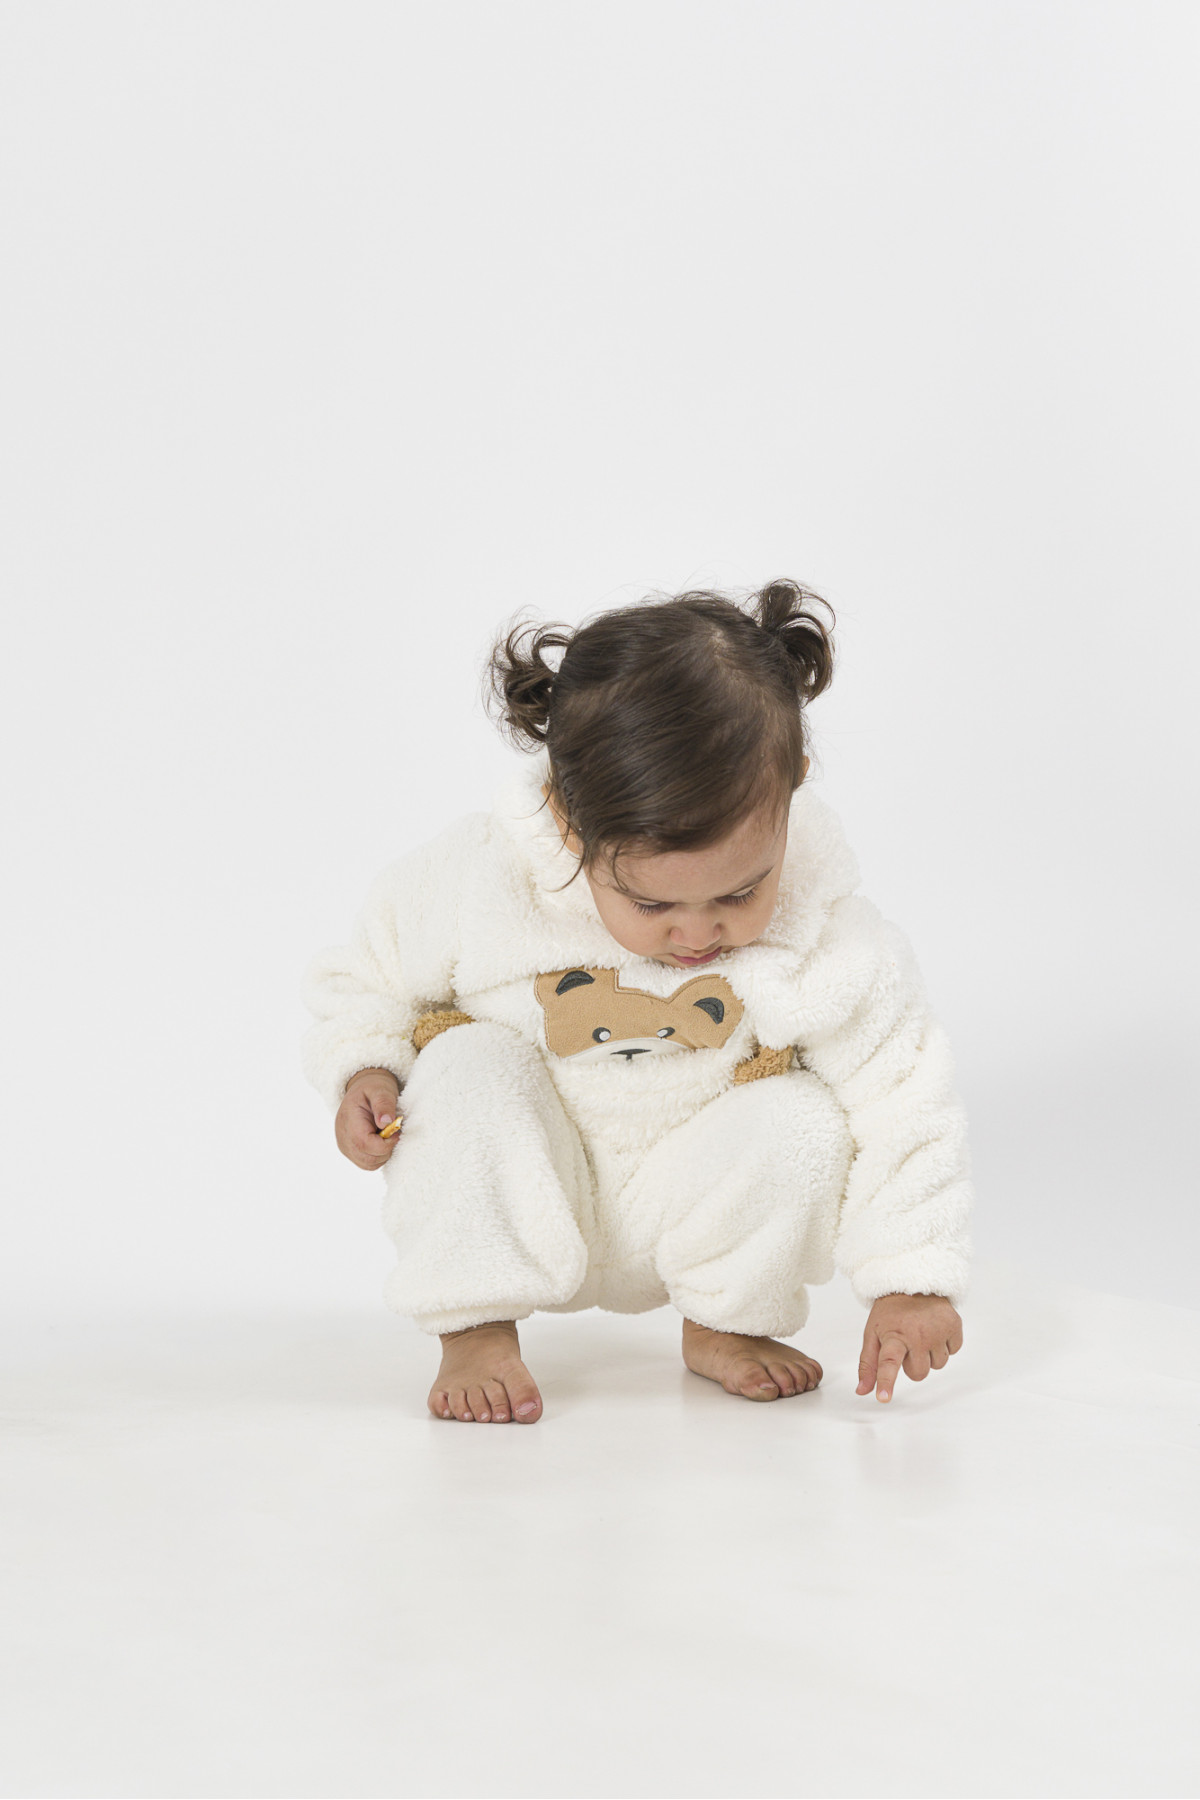 Welsoft Peluş Unisex Kışlık Bebek Takımları Çocuk Giyim Bebek Kıyafeti Çocuk Kostümü welsoft takım TKMWLS